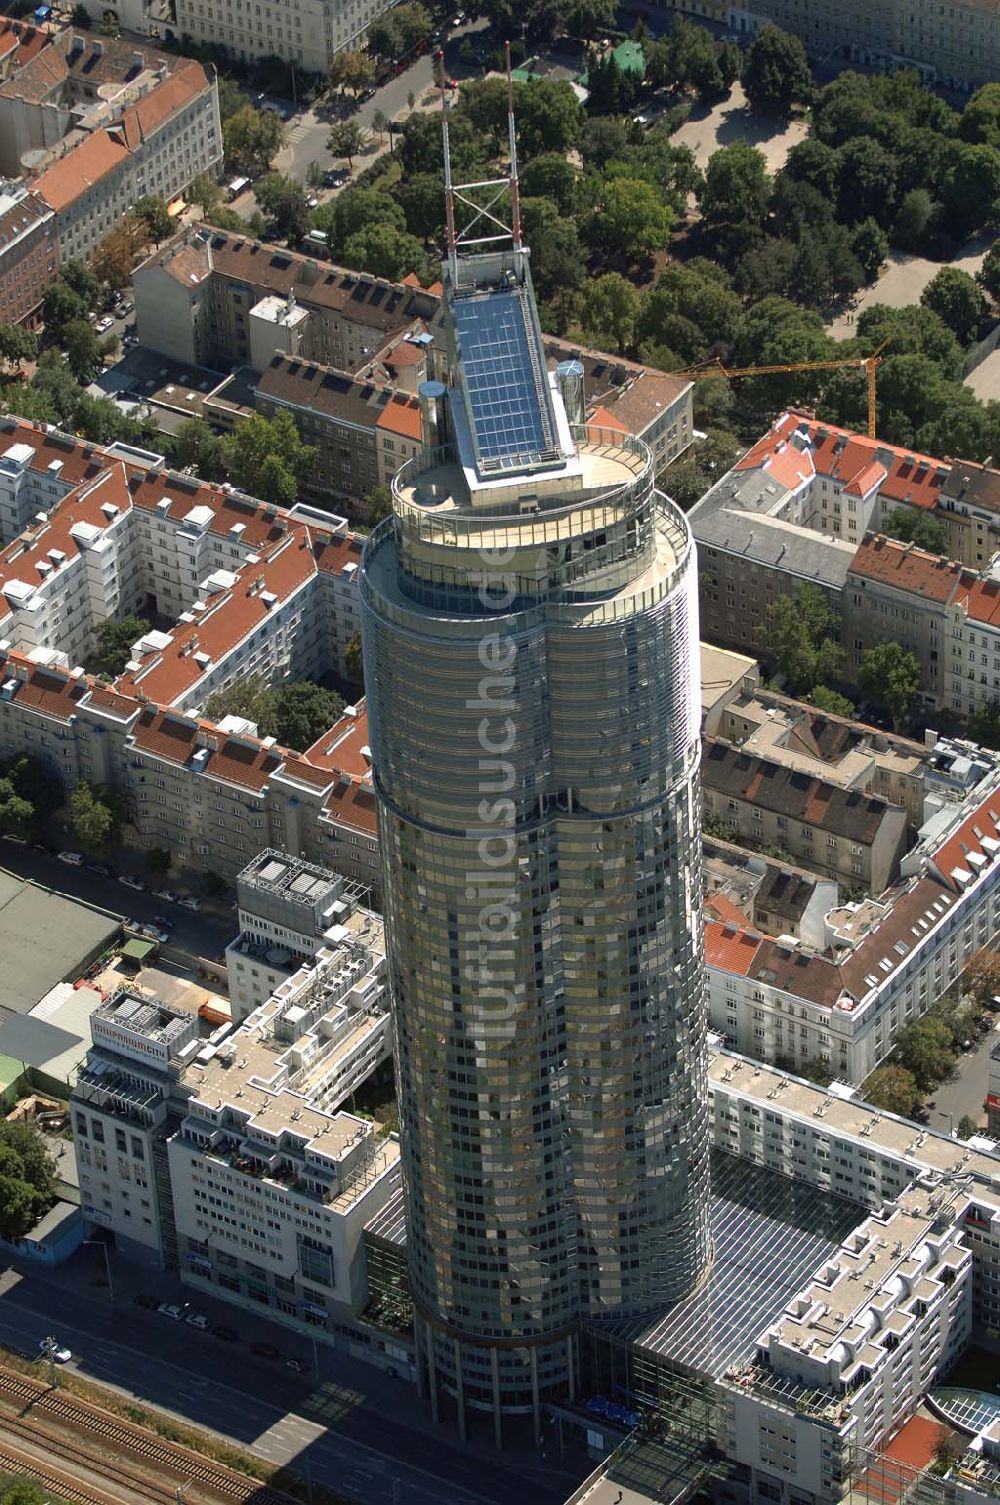 Wien aus der Vogelperspektive: Millenium Tower in Wien